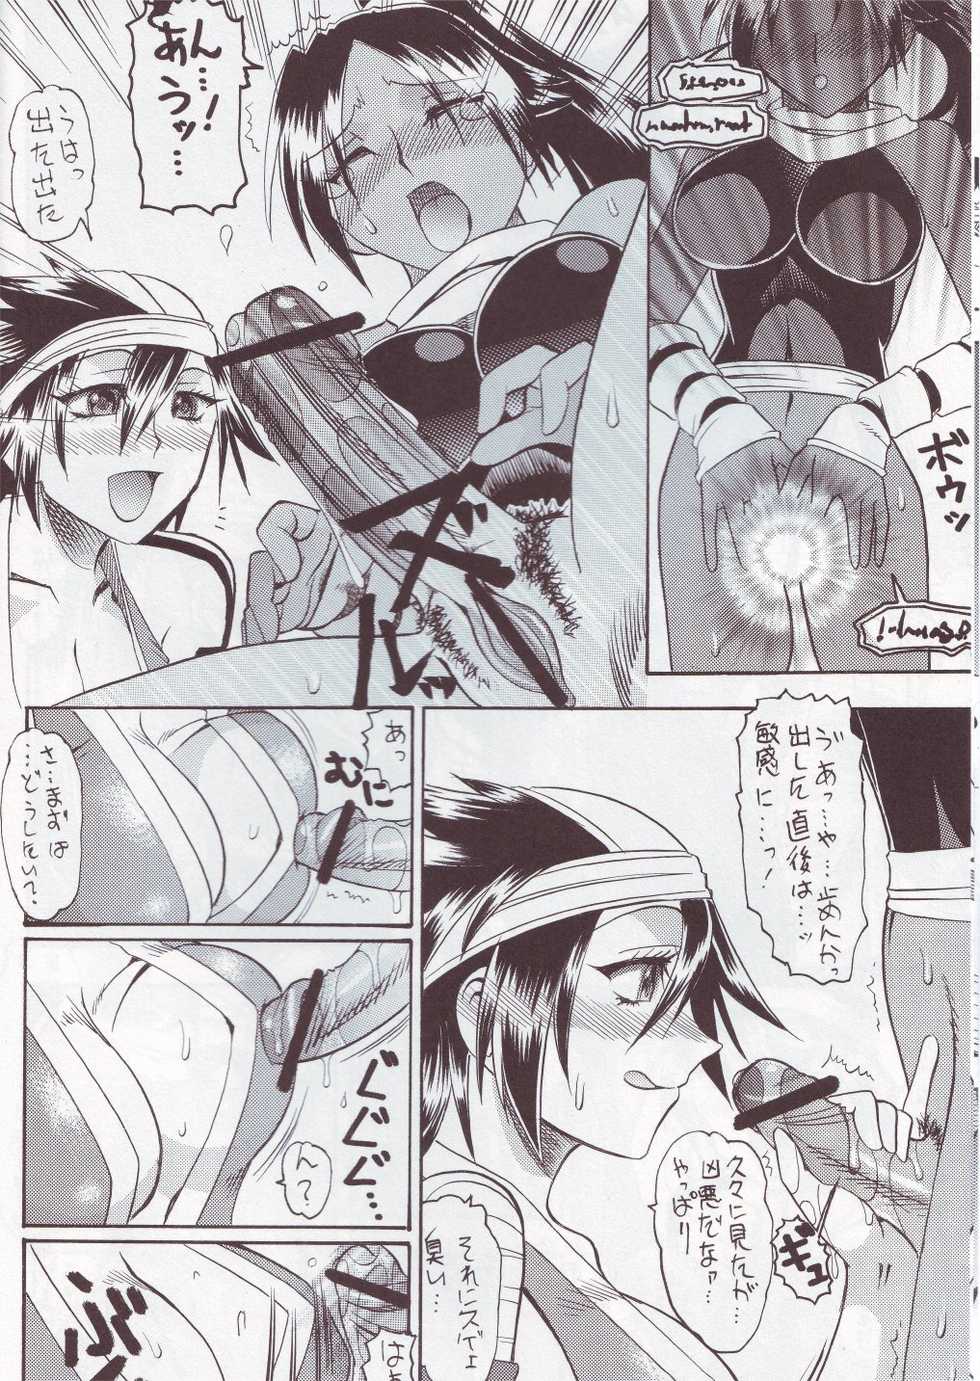 [SEMEDAIN G (Mizutani Mint, Mokkouyou Bond)] SEMEDAIN G WORKS vol.24 - Shuukan Shounen Jump Hon 4 (Bleach, One Piece) - Page 7